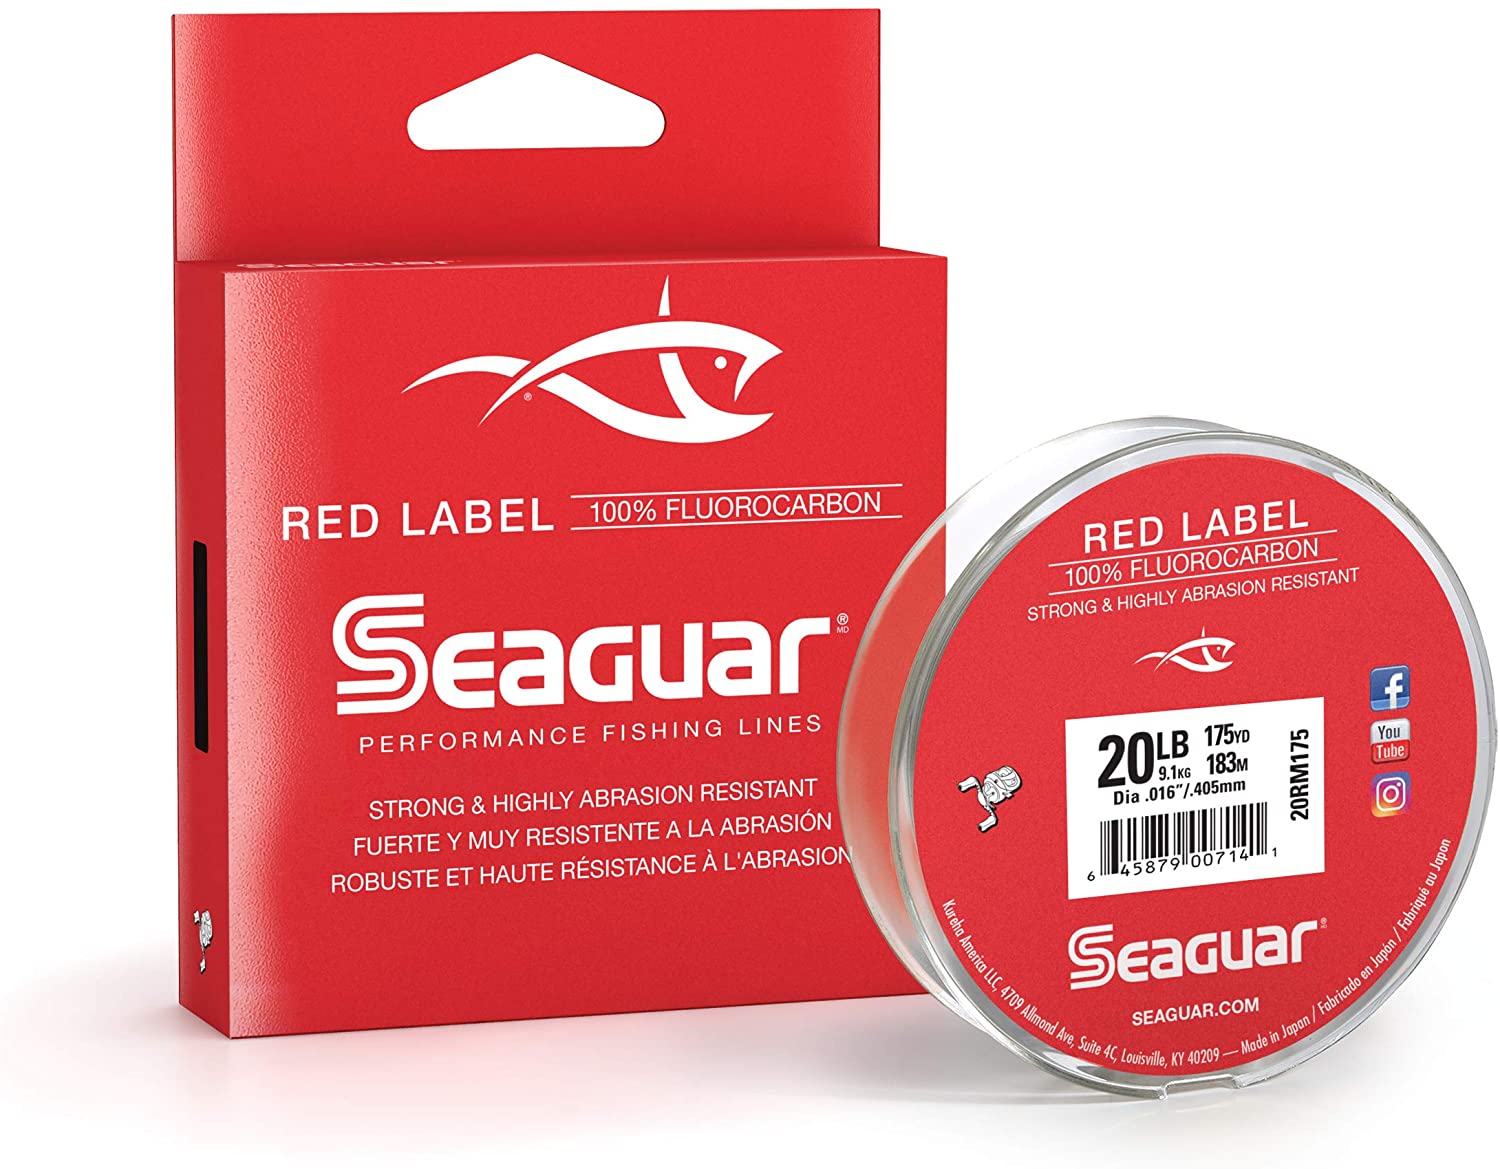 Seaguar Red Label 100% Fluorocarbon – Fat Nancy's Tackle Shop